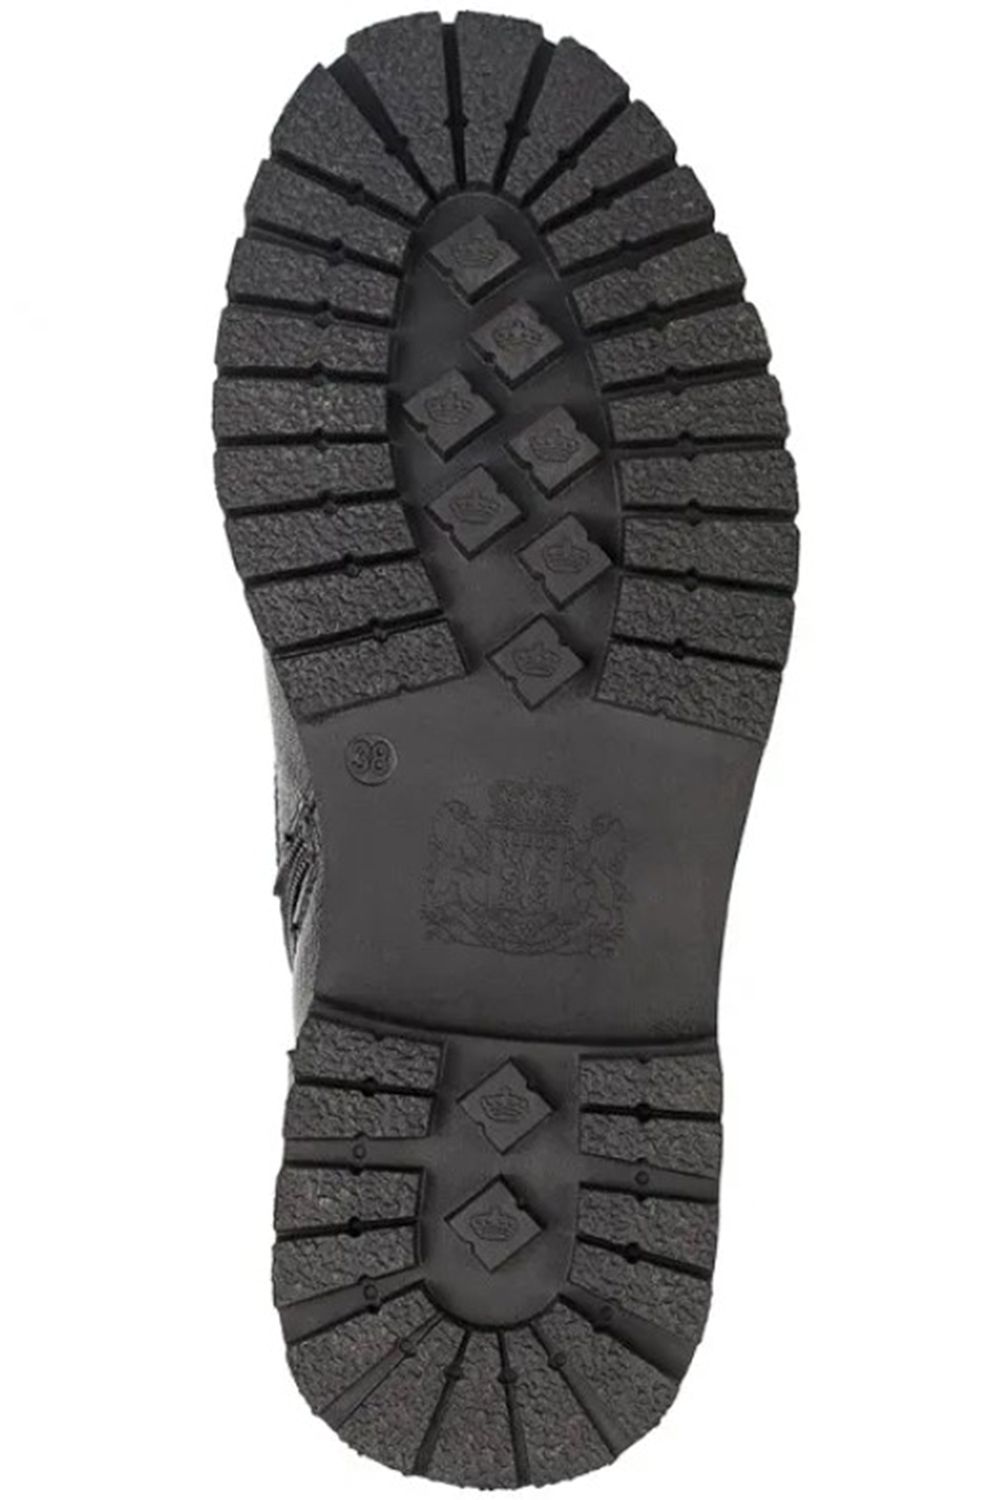 Ботинки Keddo, размер 39, цвет черный 598139/06-06 - фото 3